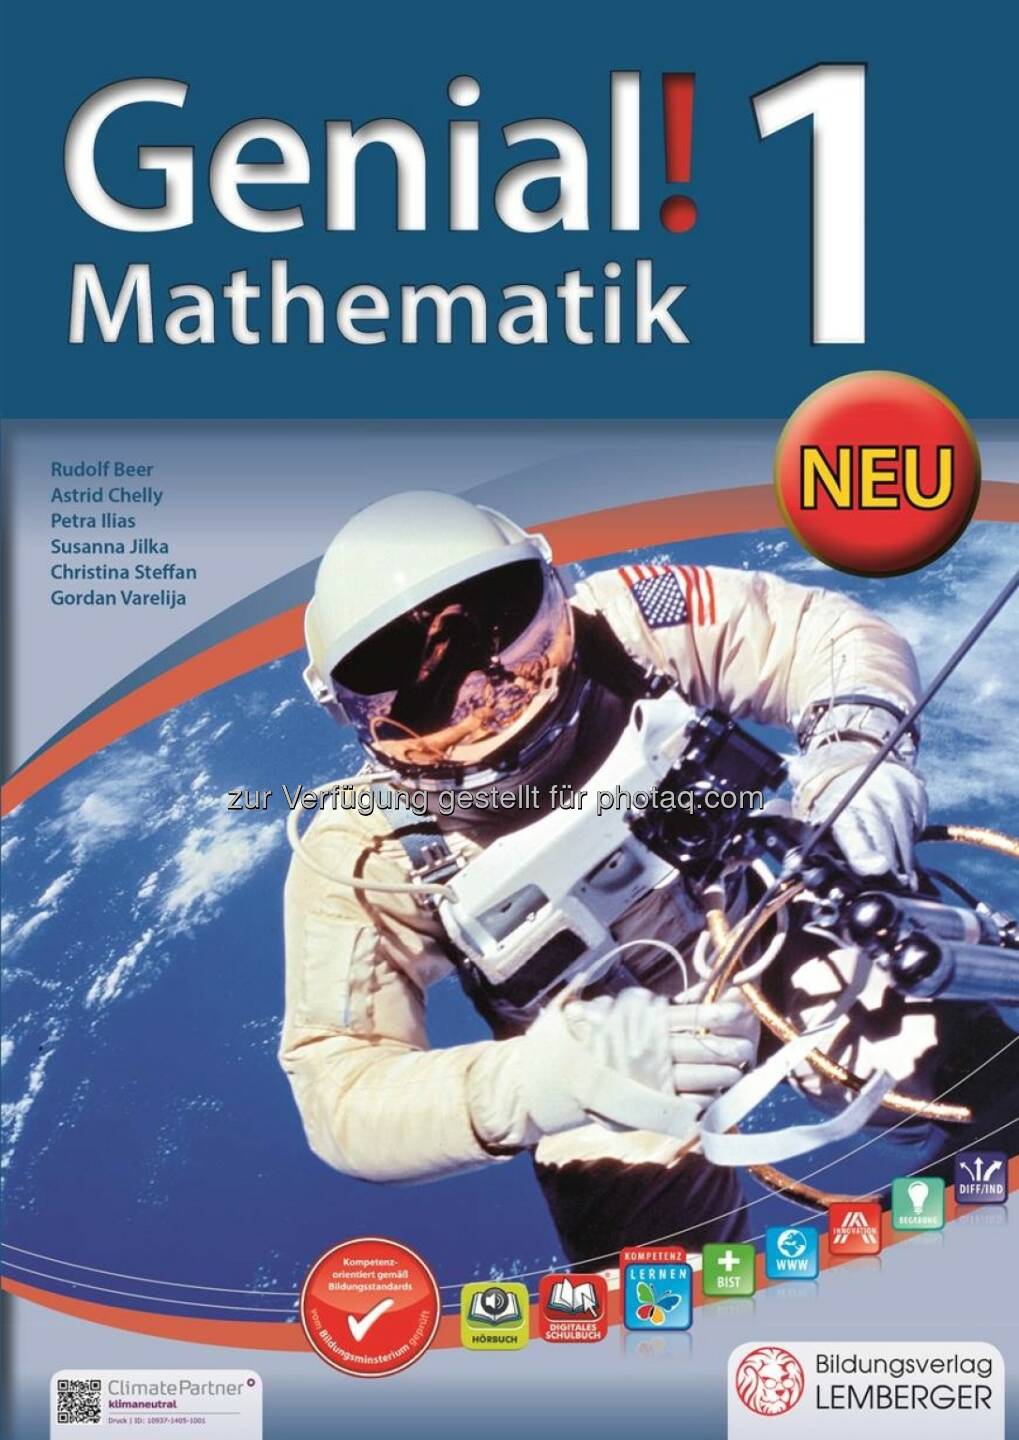 Bildungsverlag Lemberger: Lemberger Bildungsoffensive – Das erste Mathematik-Schulbuch mit über 100 eingebauten Gratis-Lernvideos